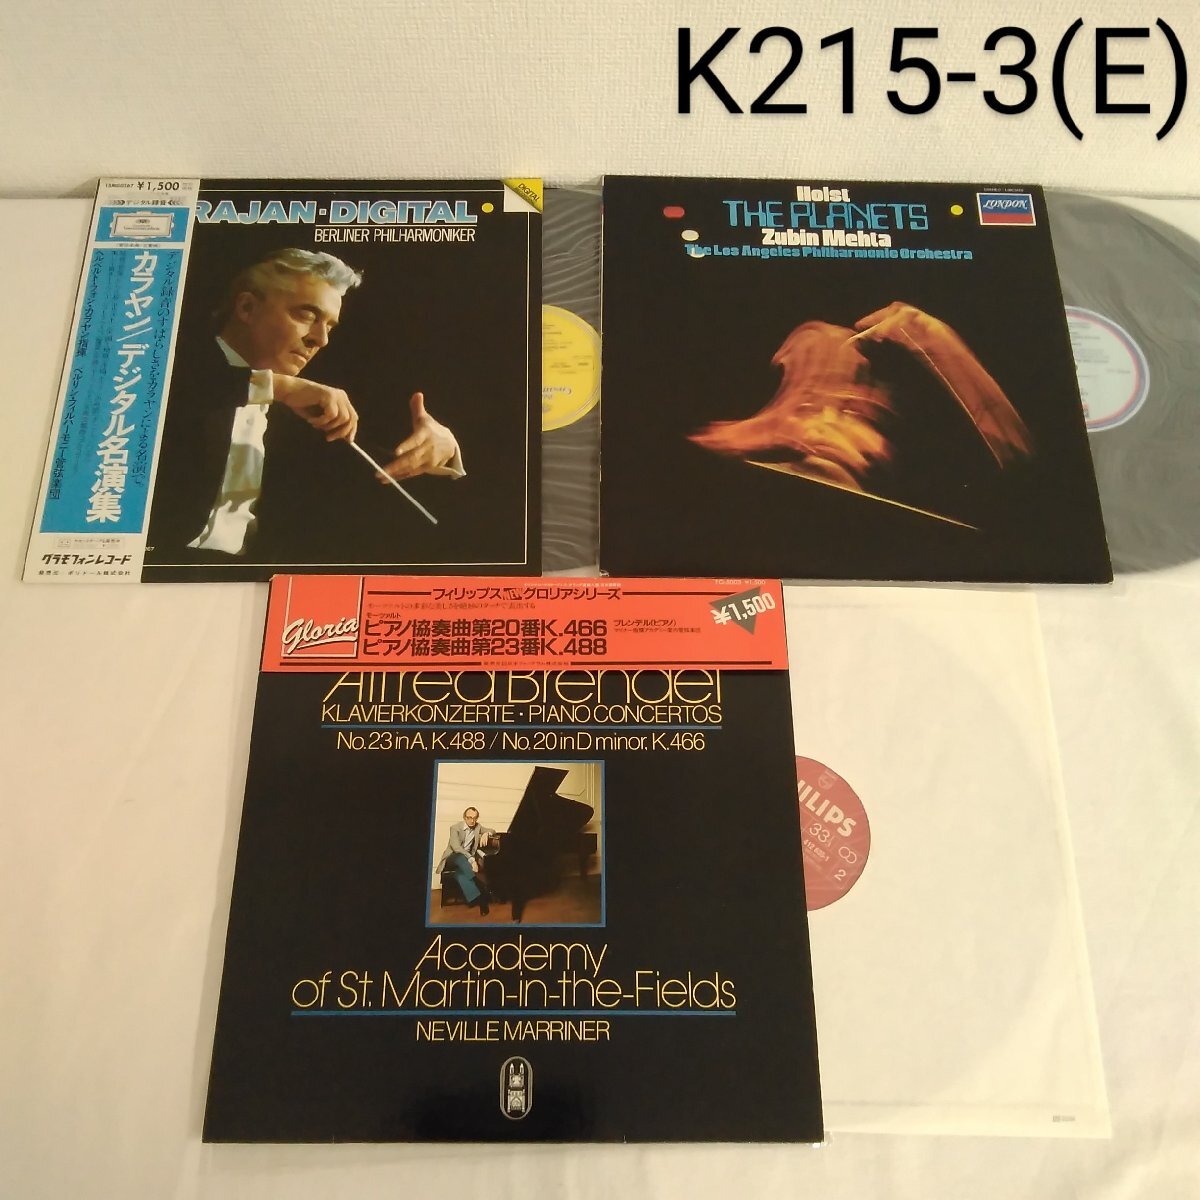 レコード まとめ売り 7組 7枚セットクラシック 洋楽 K215o-t(E)_画像3